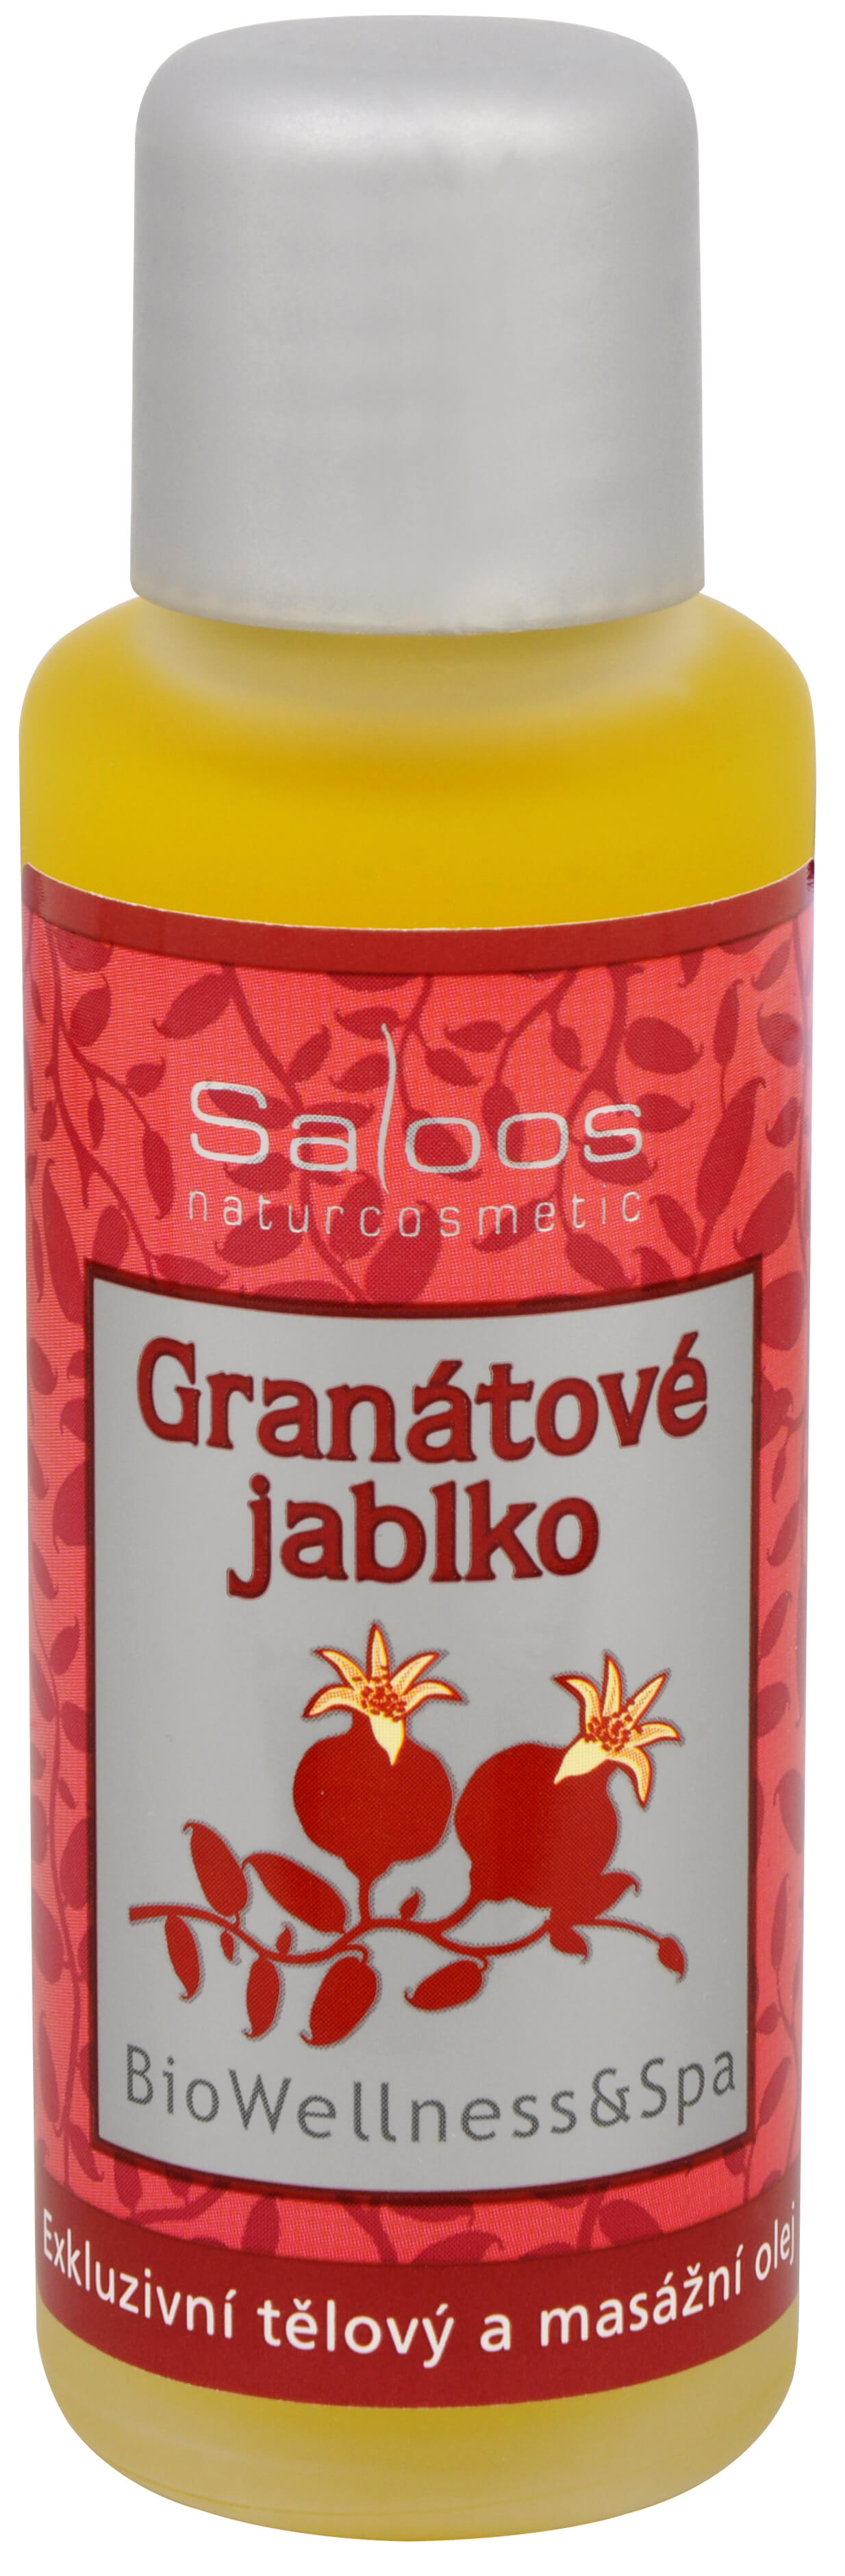 Zobrazit detail výrobku Saloos Bio Wellness exkluzivní tělový a masážní olej - Granátové jablko 50 ml